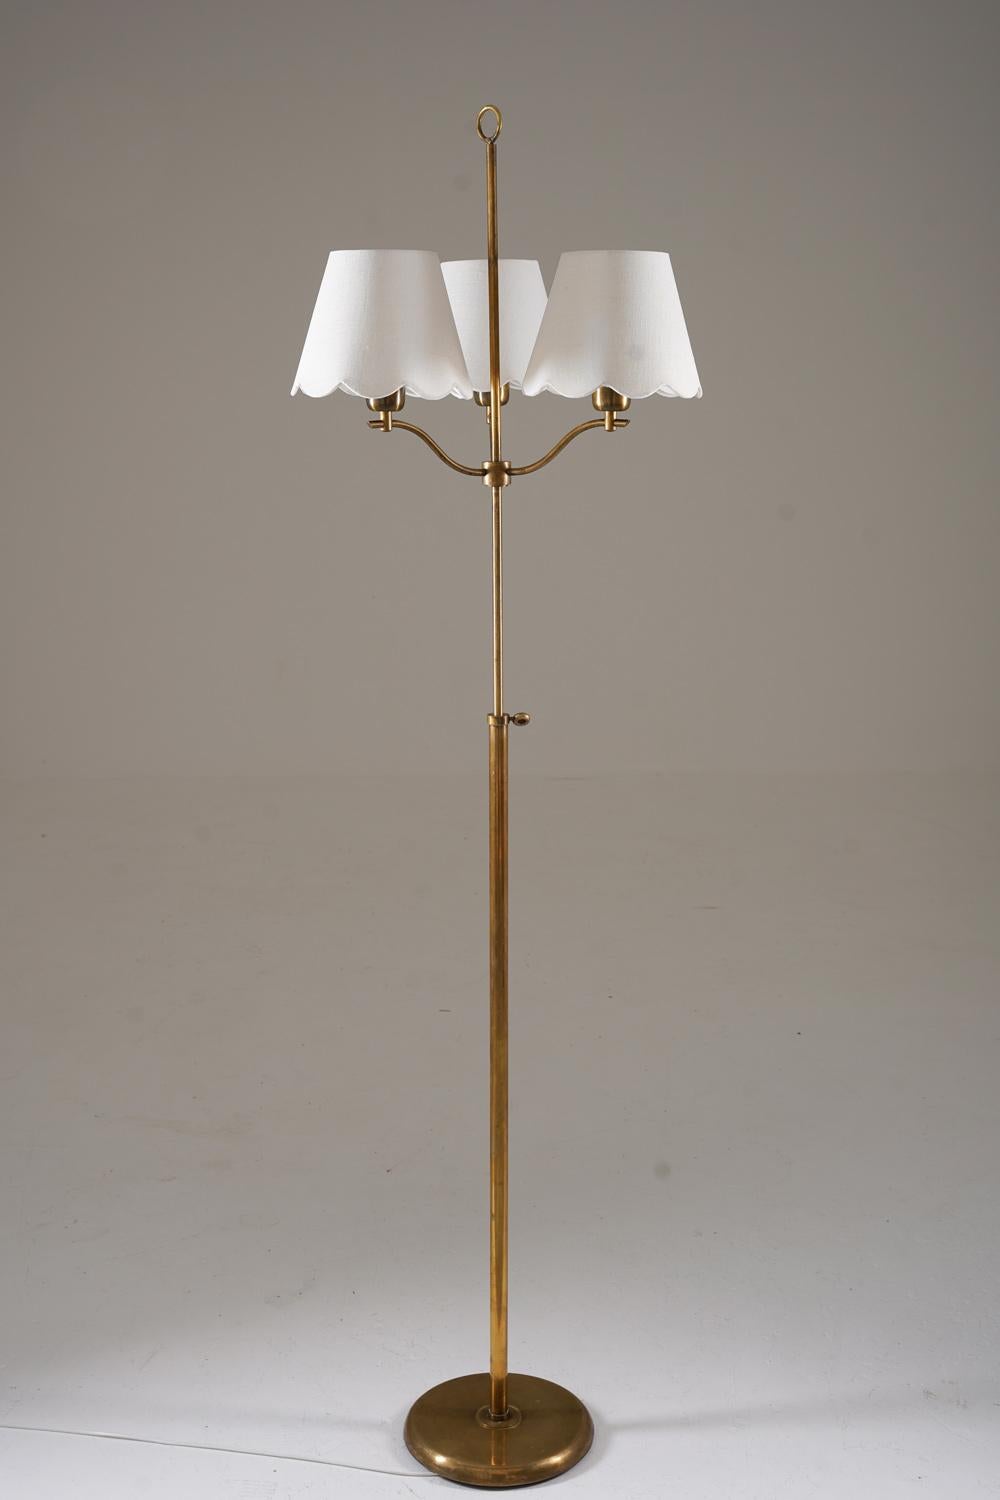 Il s'agit d'un joli lampadaire moderne suédois qui a été fabriqué en Suède dans les années 1940. La lampe est composée d'une base et d'une tige en laiton, supportant une tige plus fine réglable en hauteur (60